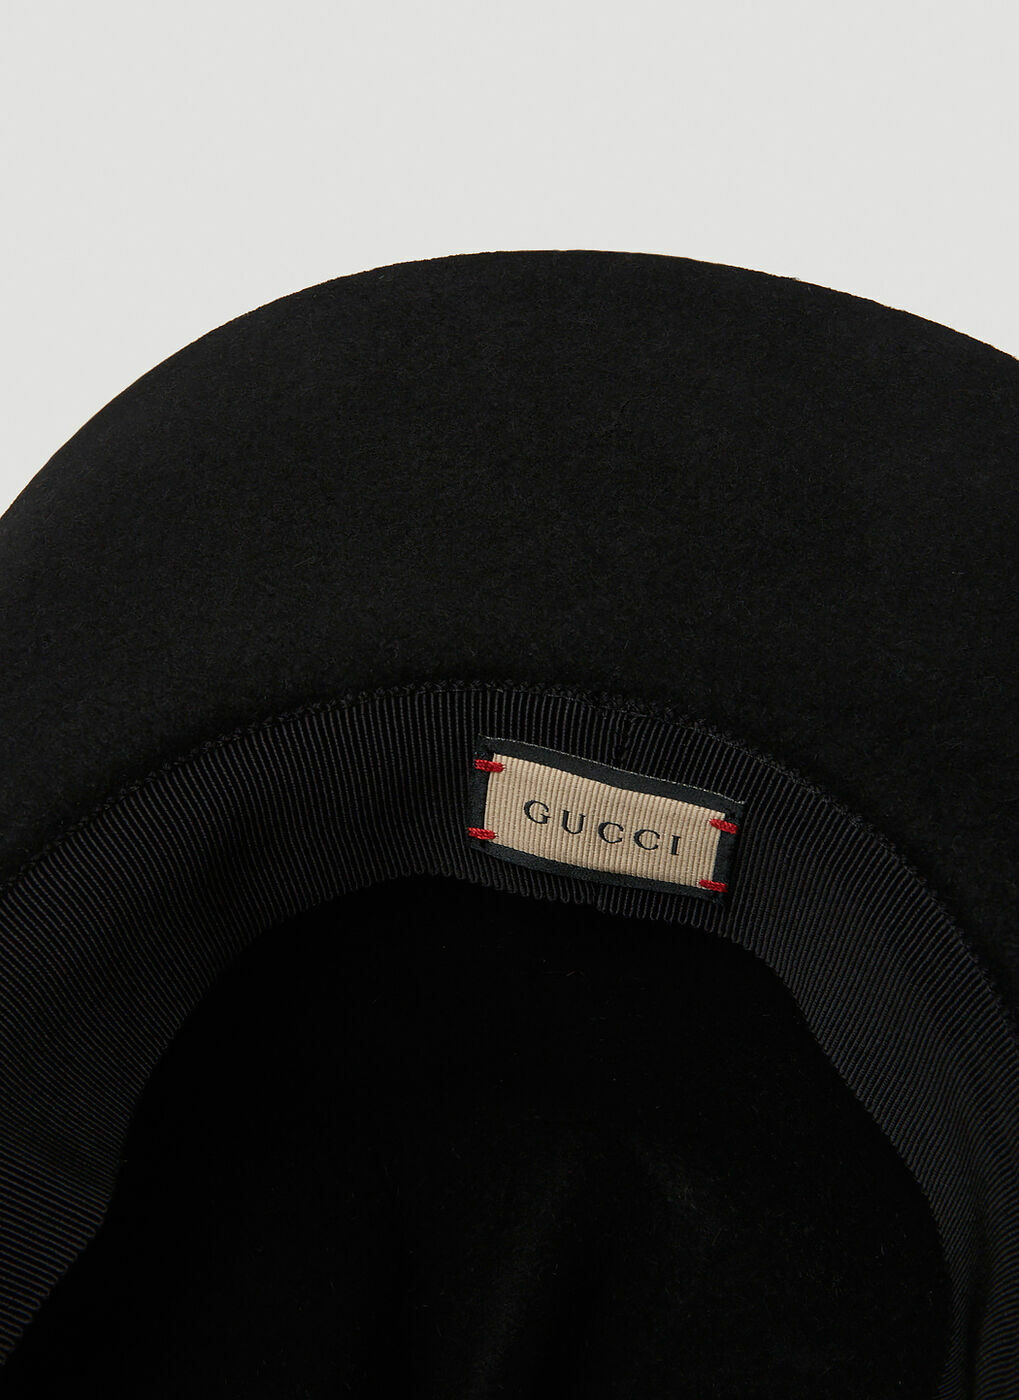 Gucci Dallas Hat In Black